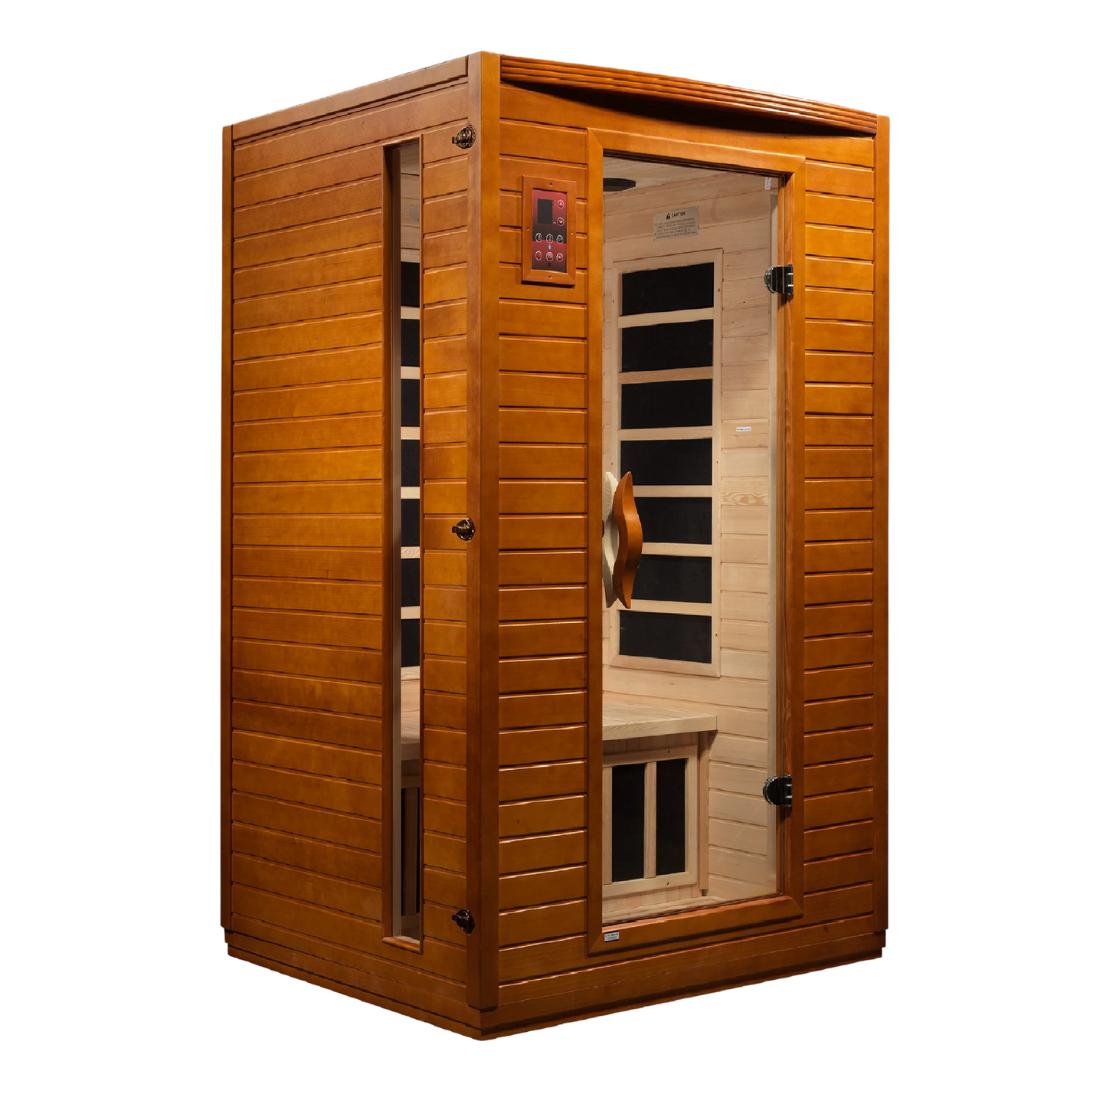 What's The Proper Sauna Etiquette? • Sauna Experts